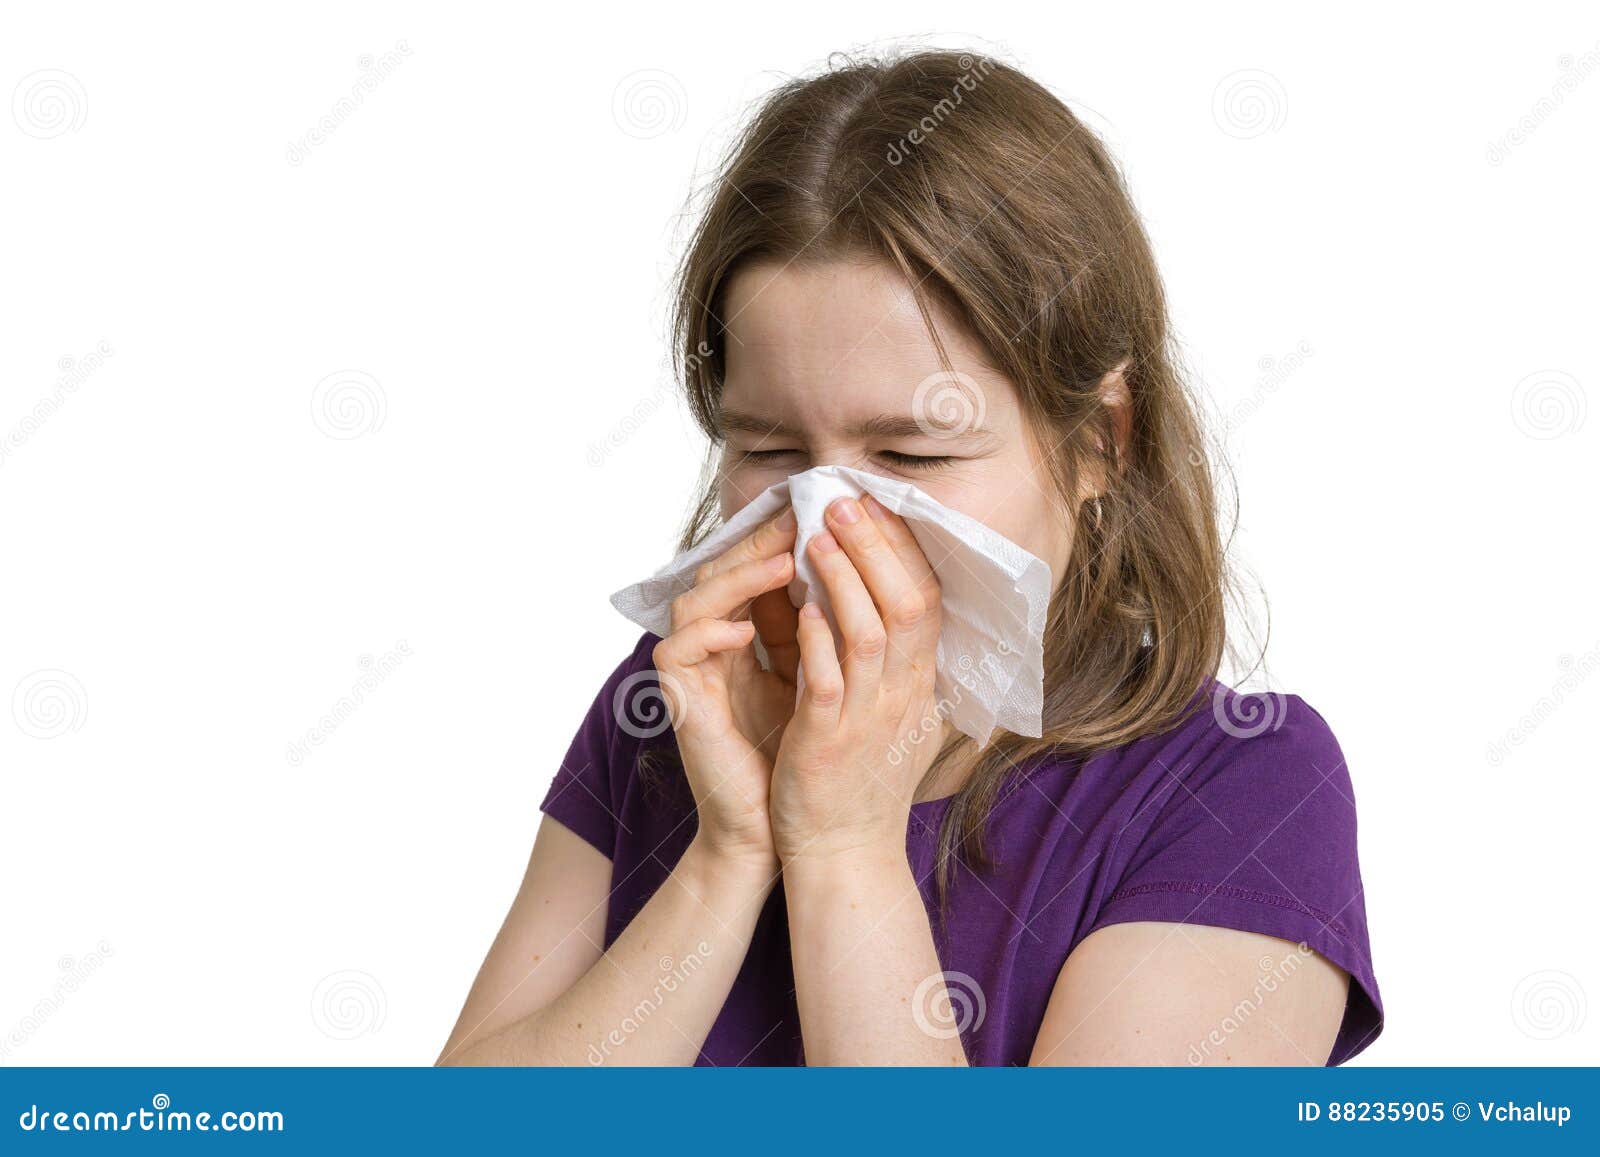 Насморк чихание слезятся глаза без температуры. Сморкается белый фон. Частое чихание и насморк. Аллергия чихание и насморк. Чихающий порошок.